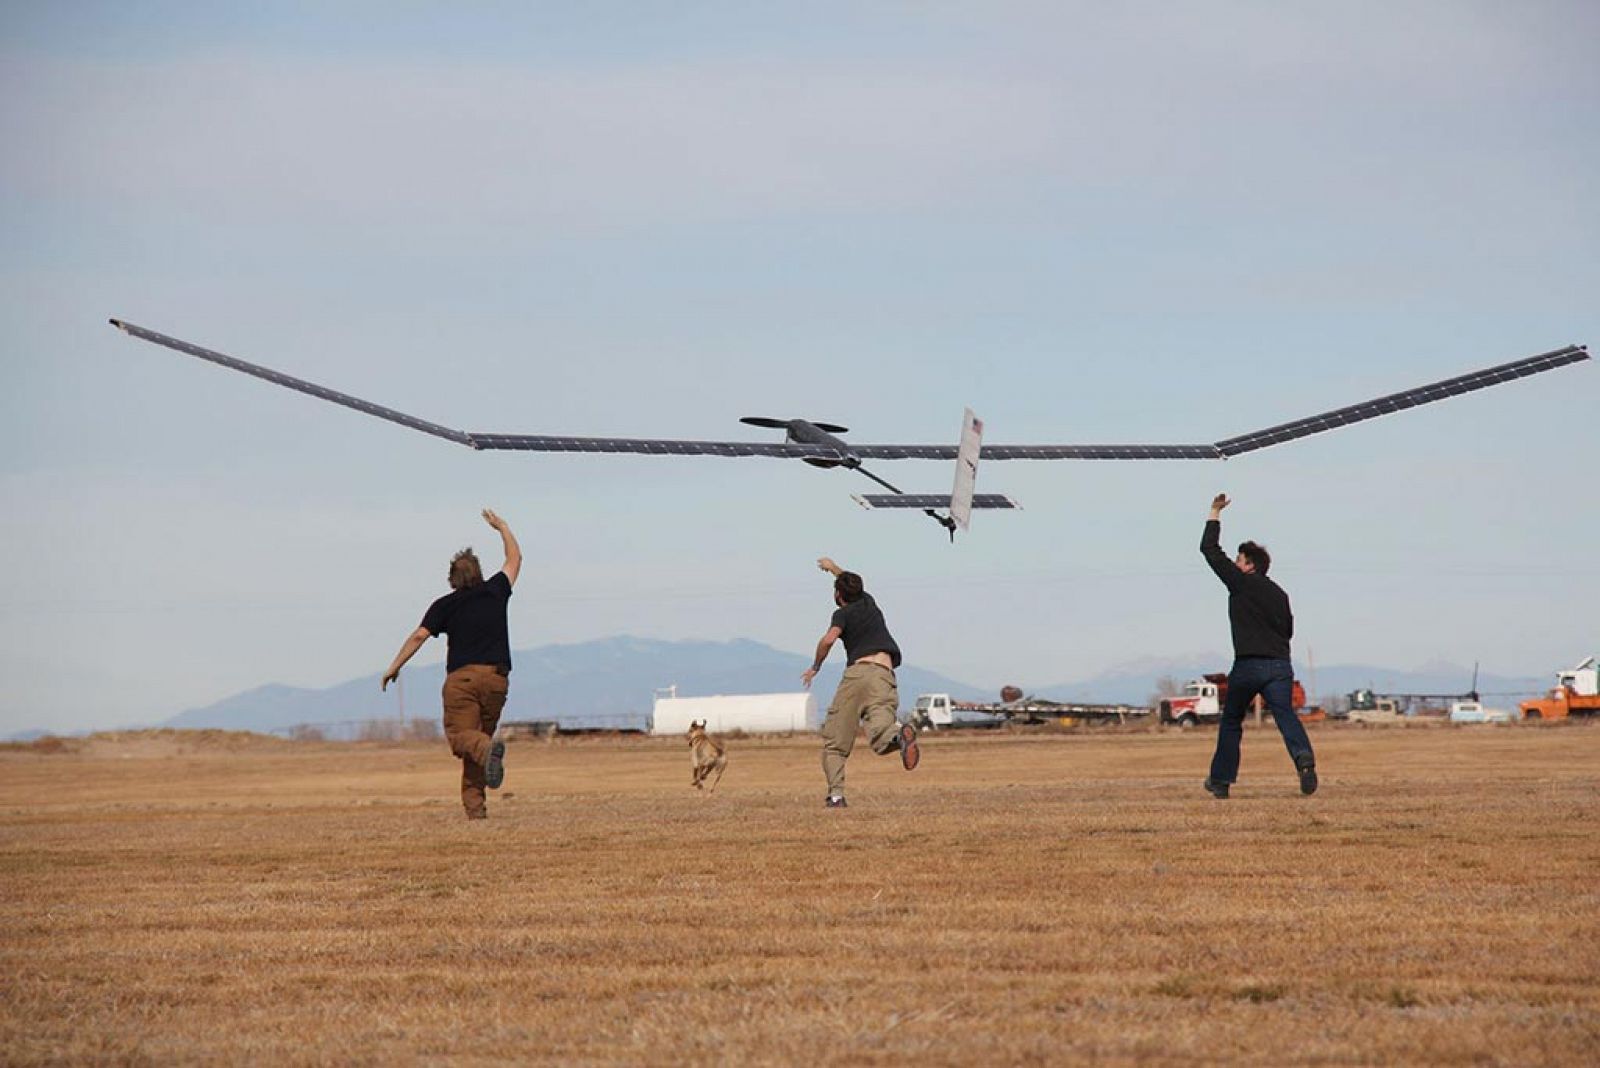 La empresa Titan Aerospace, afincada en Nuevo México, se dedica a la fabricación de aeronaves no tripuladas impulsadas por energía solar.